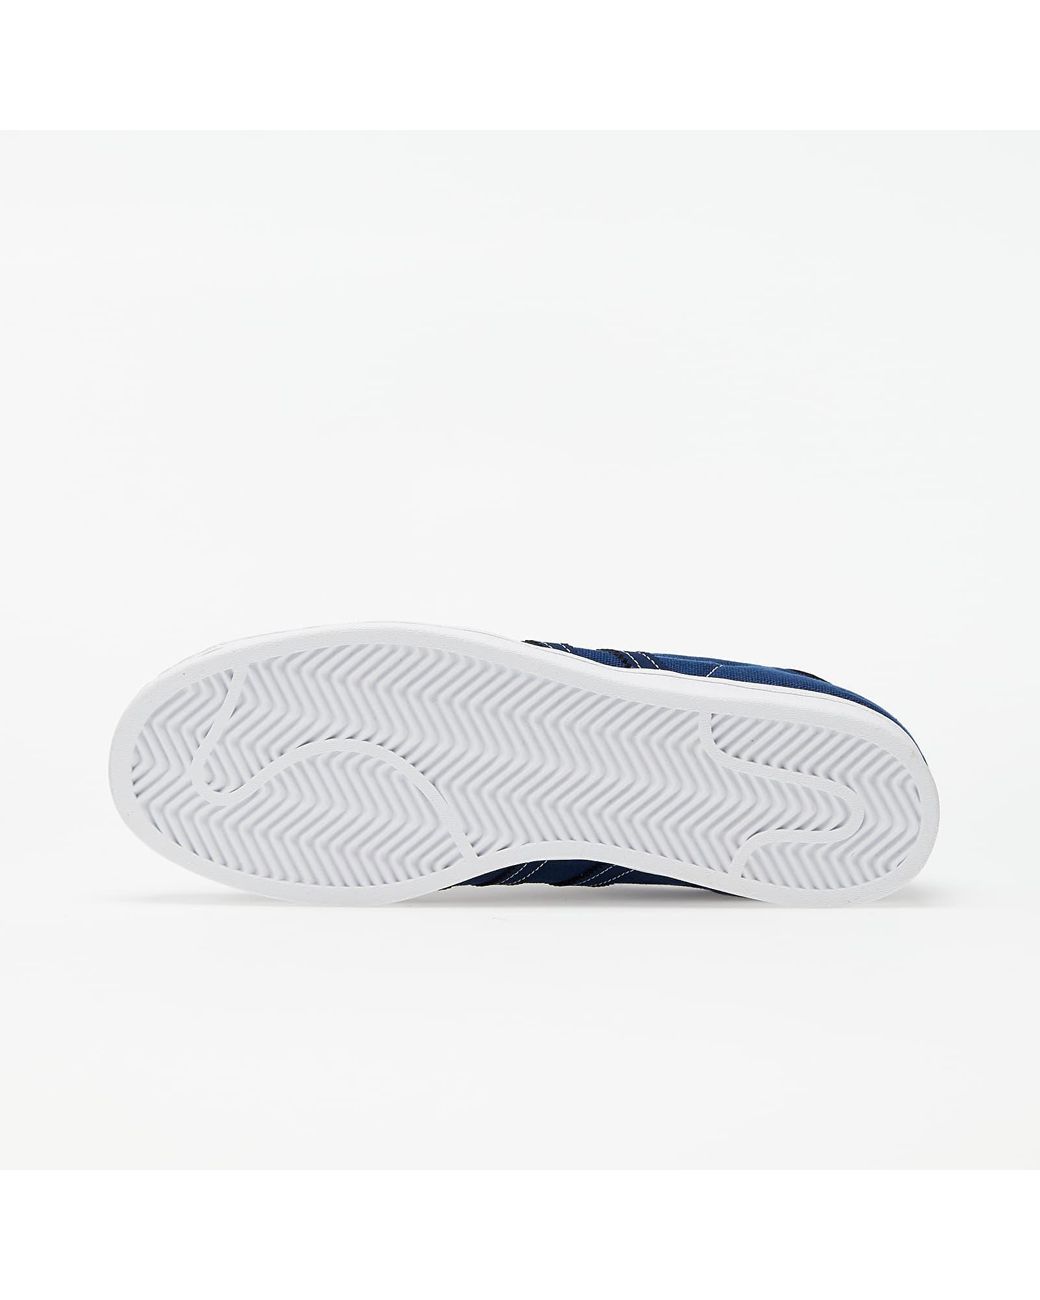 adidas Originals Adidas Superstar Navy/ Collegiate Navy/ White in Blue for Men Lyst